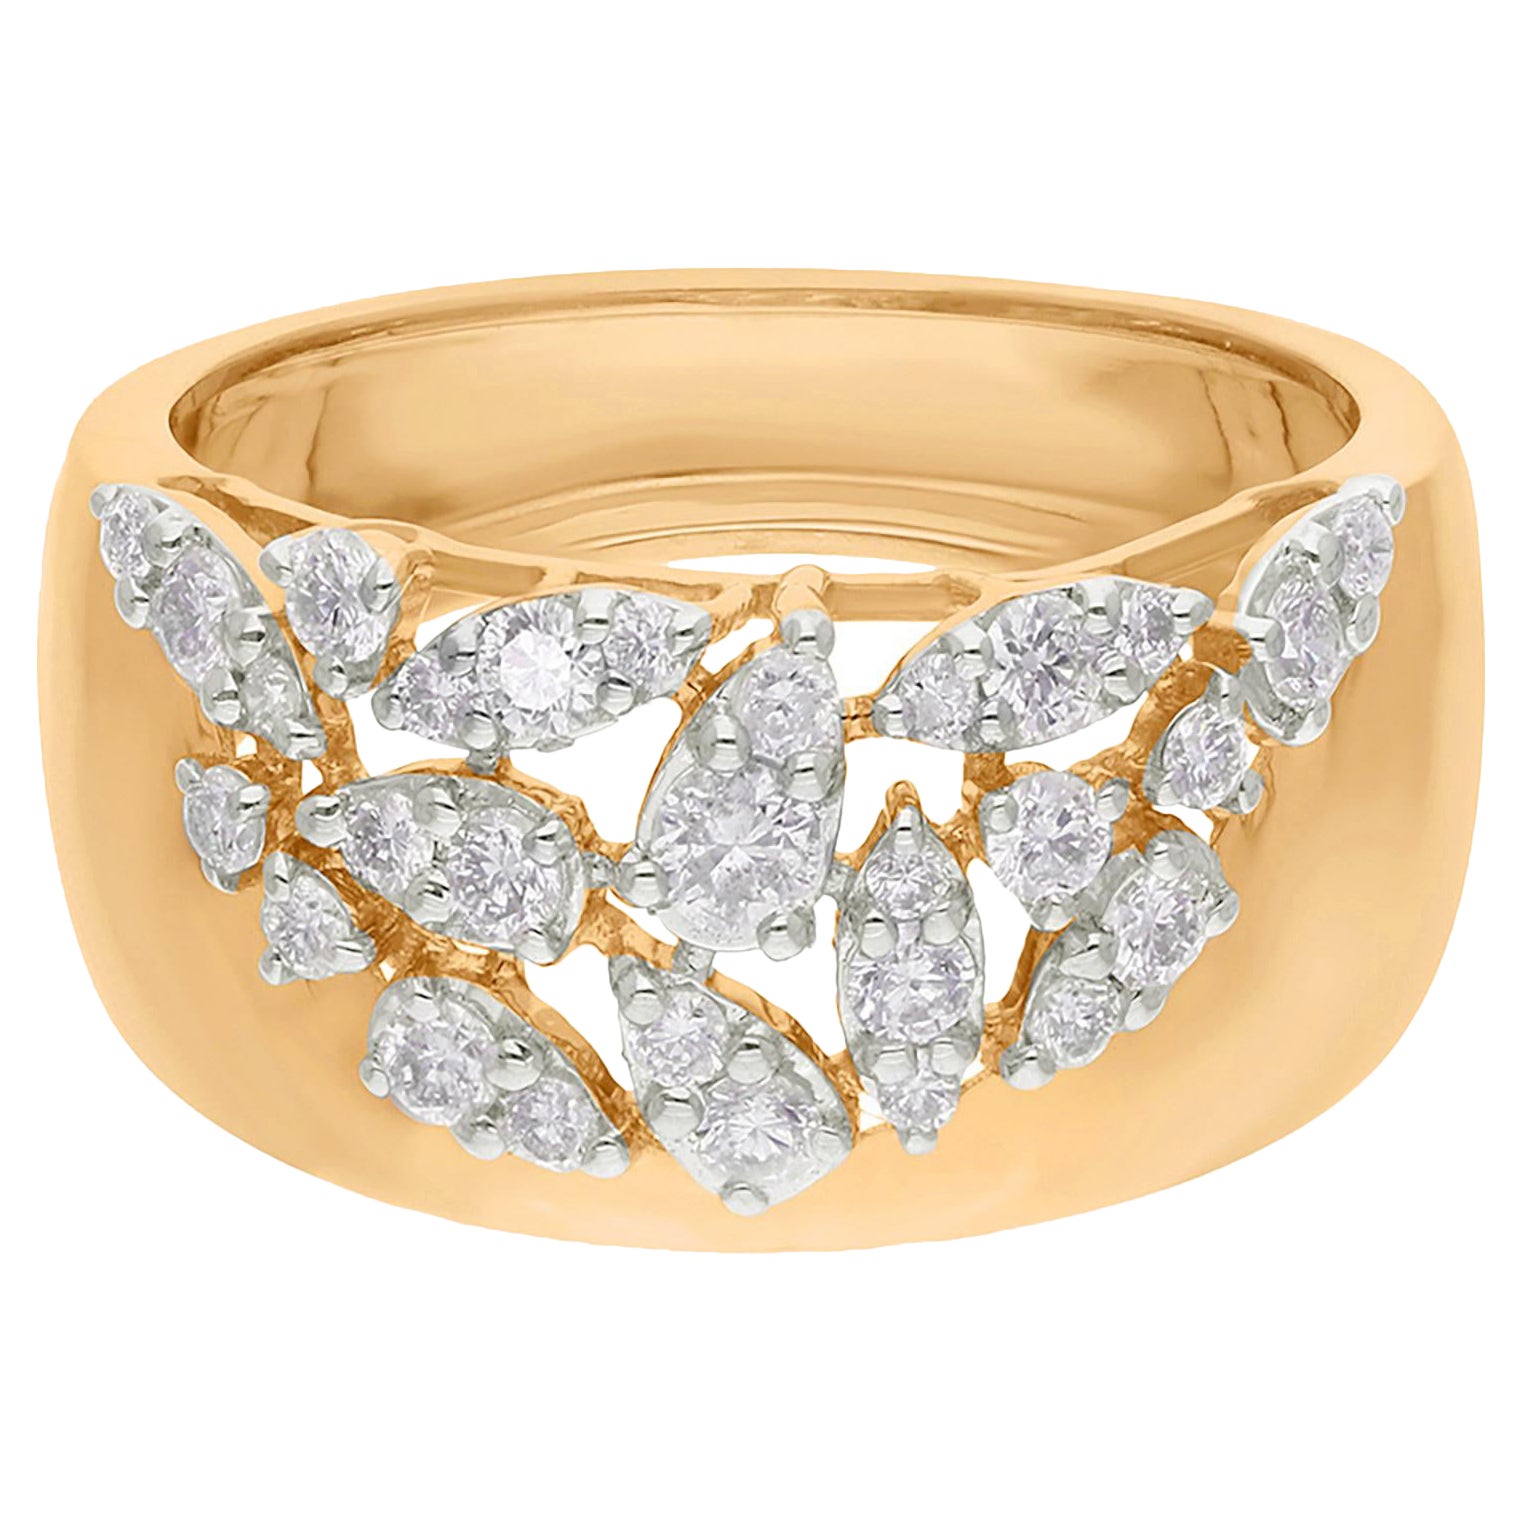 Natural 0.51 Carat Round Diamond Ring 14 Karat Yellow Gold Handmade Fine Jewelry